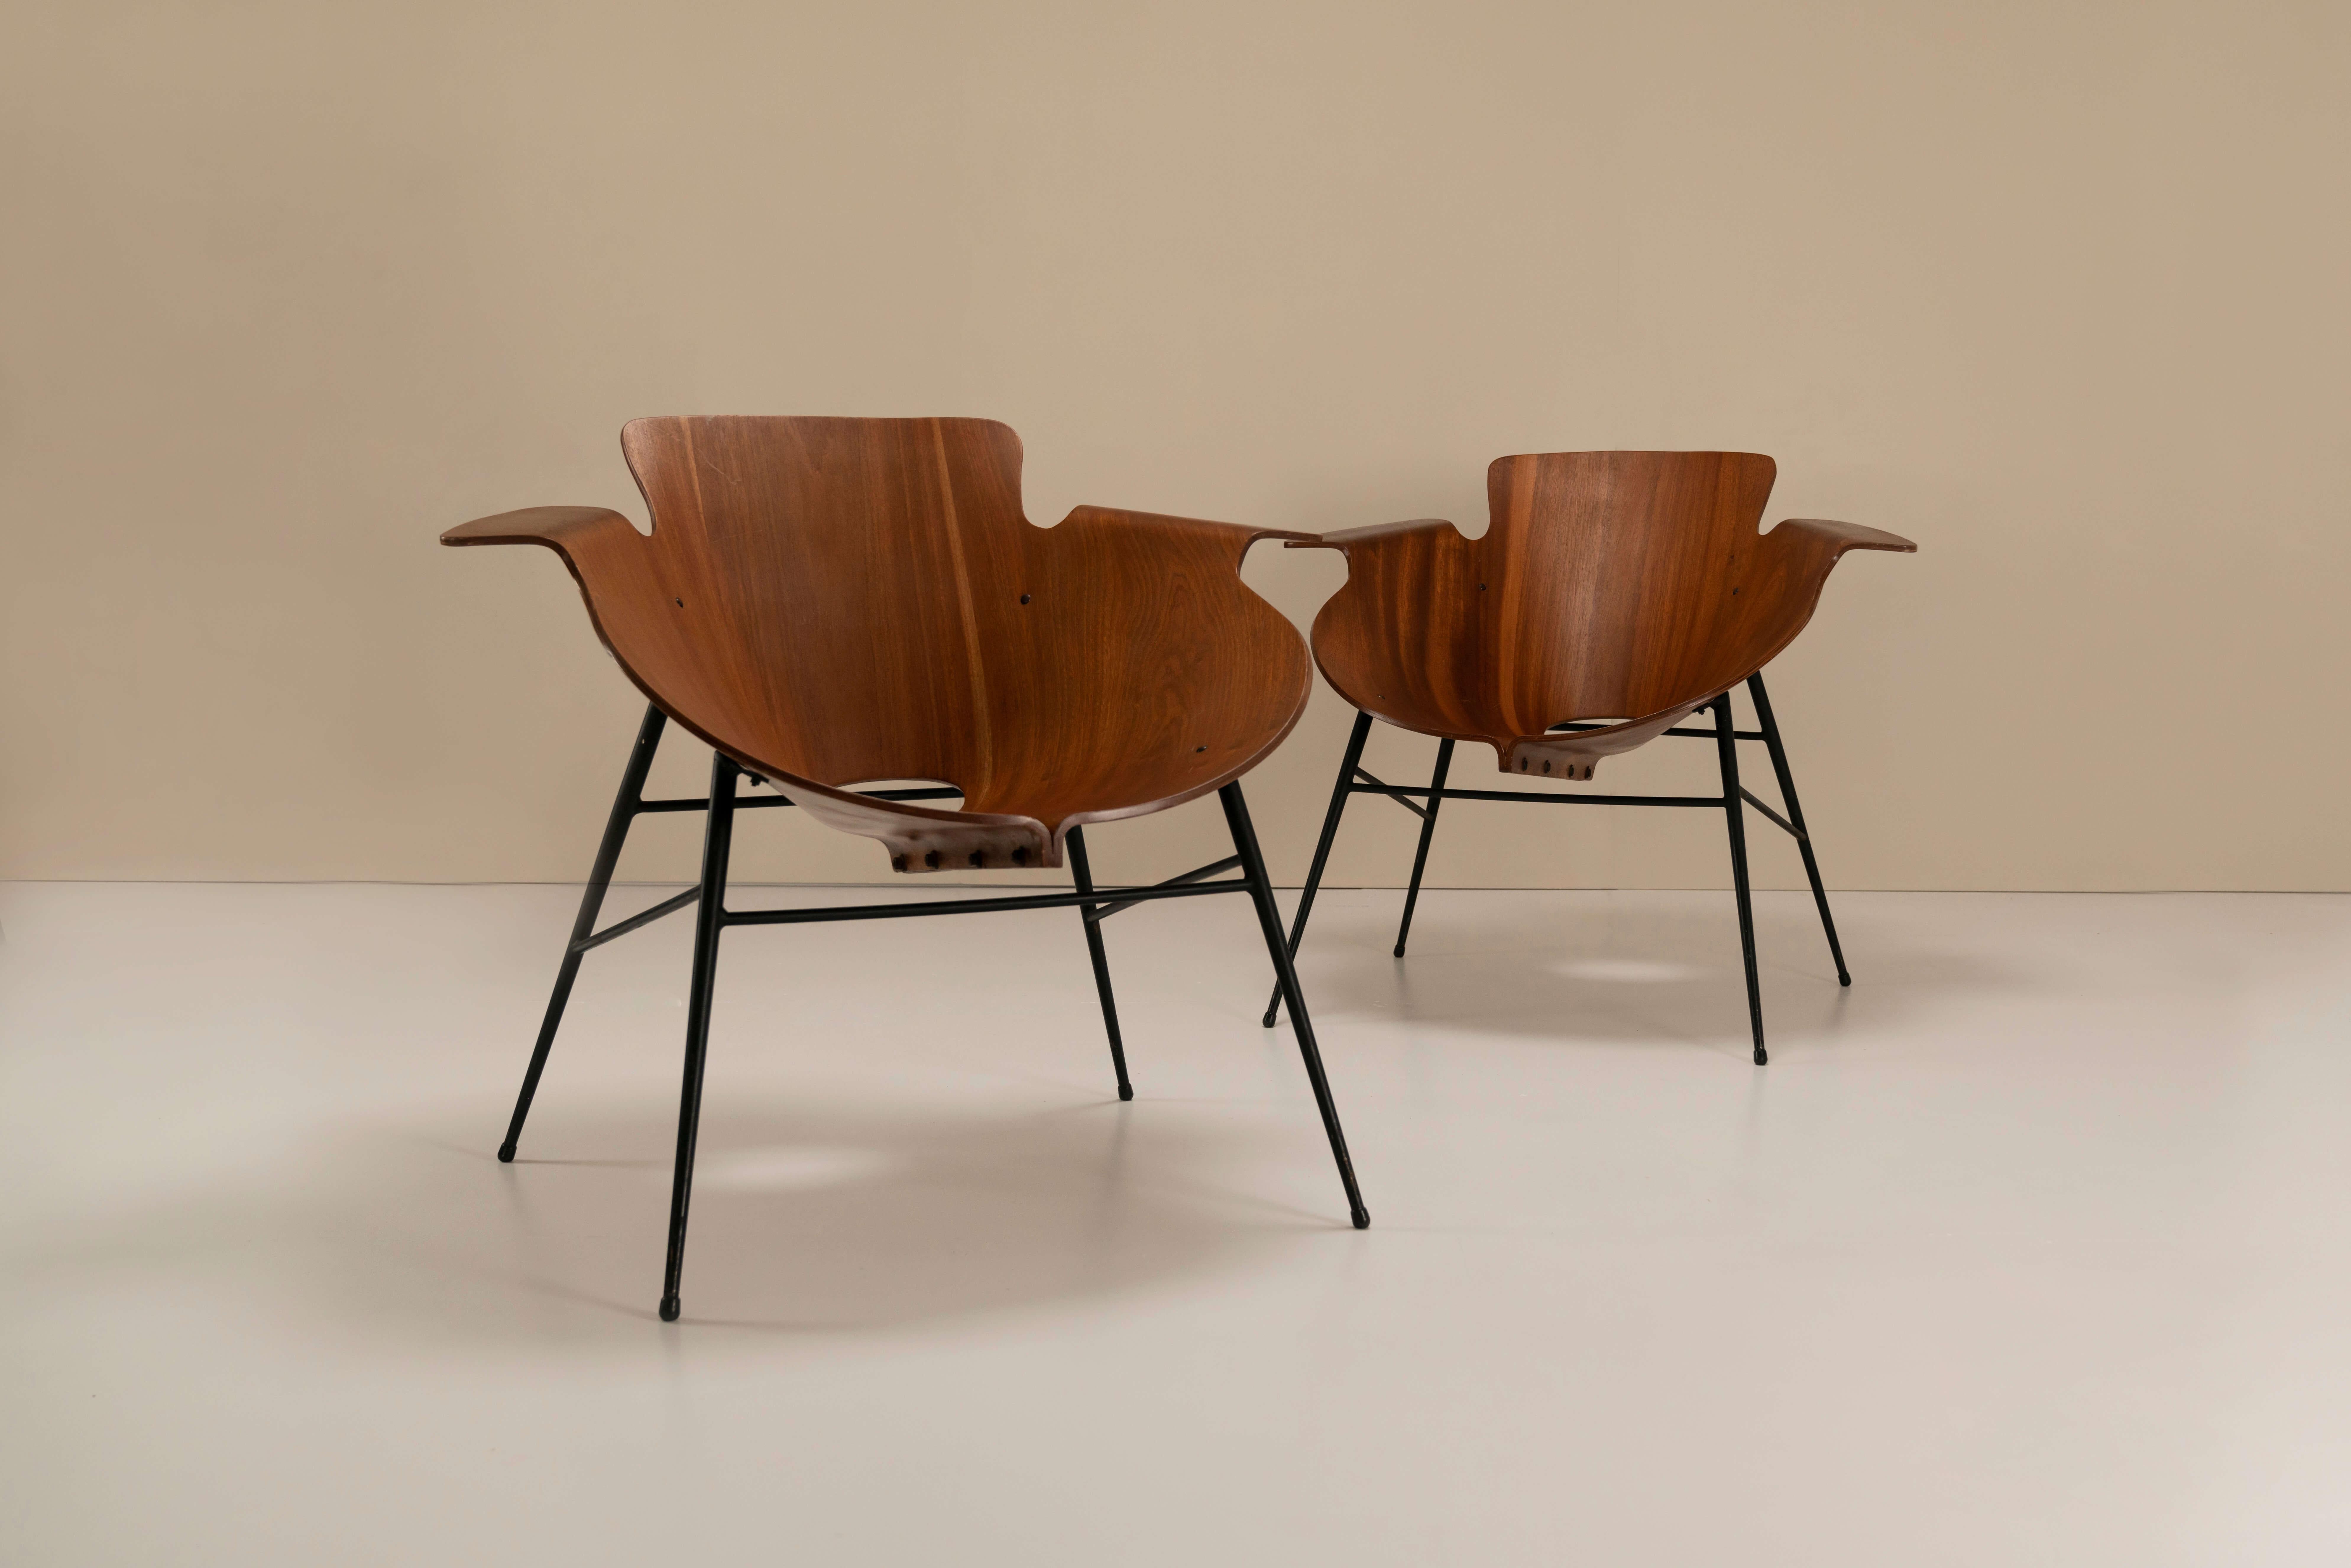 Ces magnifiques chaises en bois courbé ont été conçues en 1958 par l'architecte italien Eugenio Gerli pour la Società Compensatie Curvi. Cette entreprise, située à Monza à l'époque, était spécialisée dans la fabrication de chaises en bois courbé